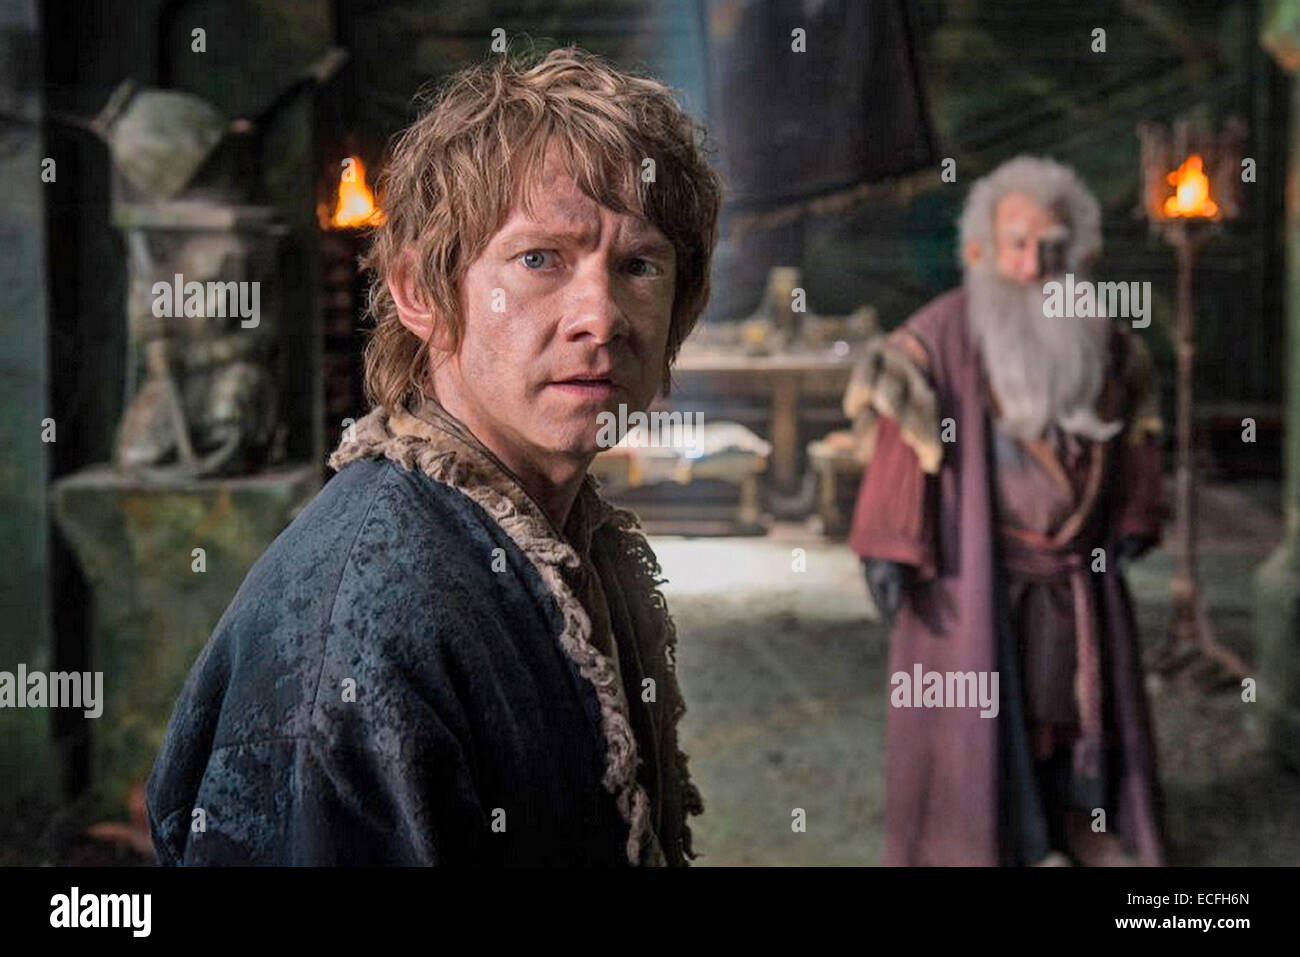 El Hobbit : LA BATALLA DE LOS CINCO ejércitos de 2014 películas de MGM con Martin Freeman a izquierda y Ken Stott Foto de stock